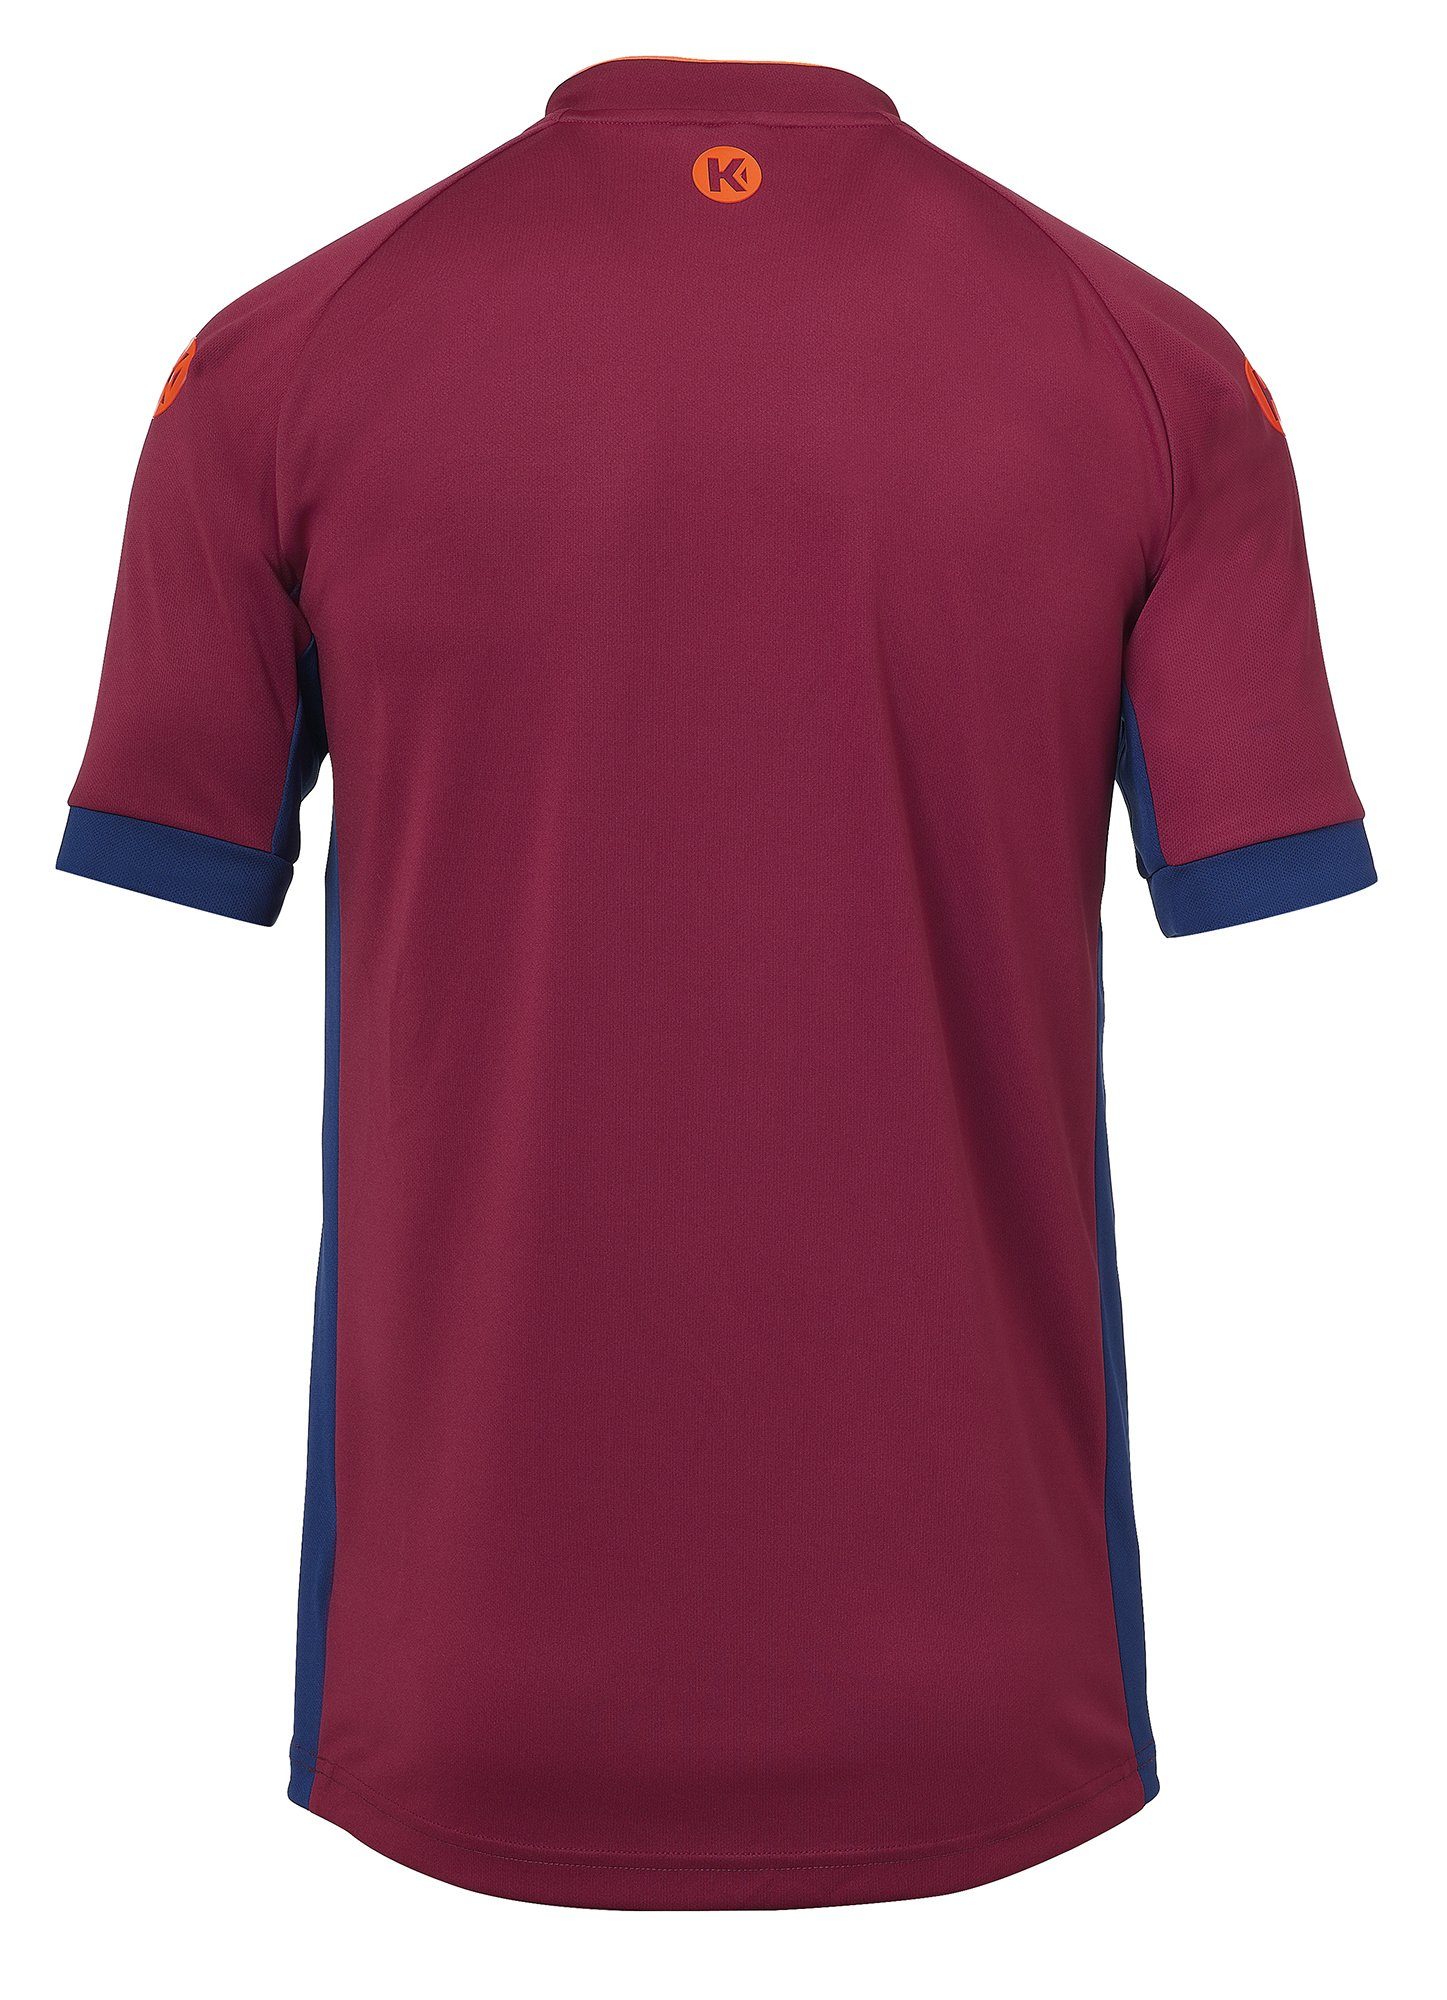 Kempa Trainingsshirt Kempa Shirt PRIME blau/deep TRIKOT rot deep schnelltrocknend